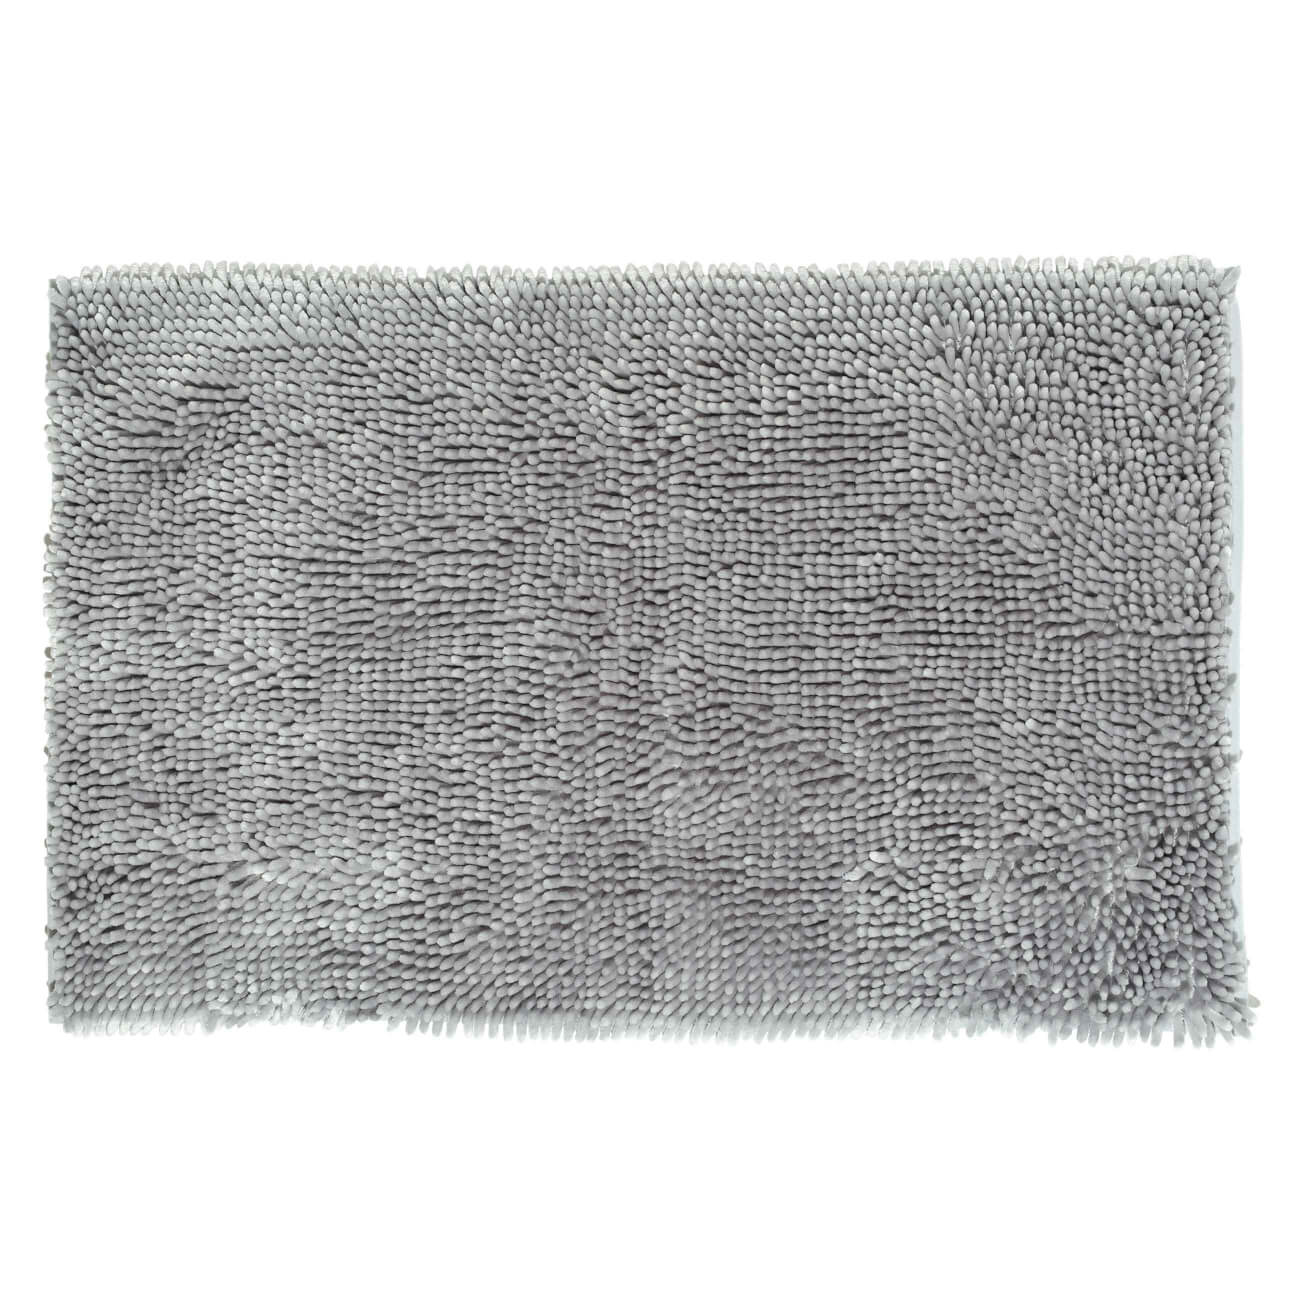 Коврик, 50х80 см, противоскользящий, полиэстер, серый, Fluff коврик для ванной togas мира серый 70х120 см